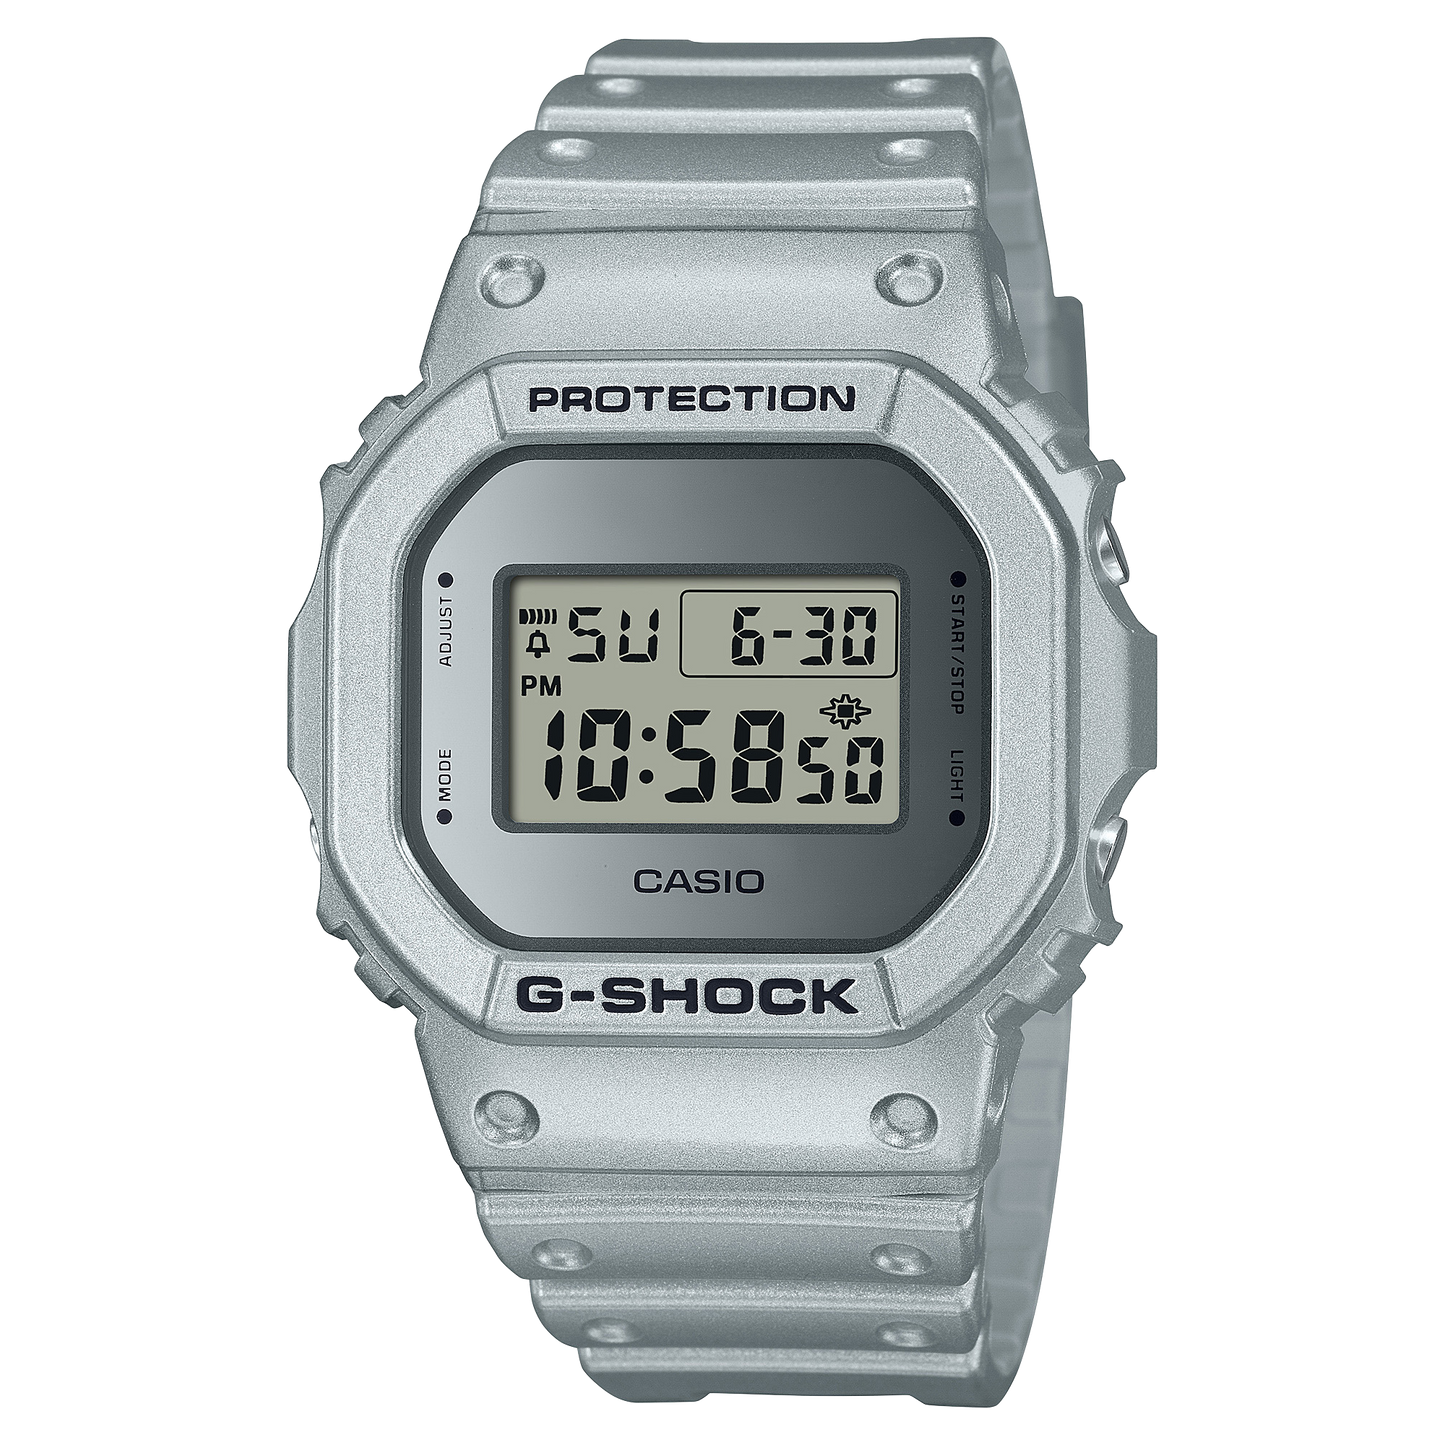 Casio G-Shock DW-5600FF-8DR Digital Men's Watch Silver